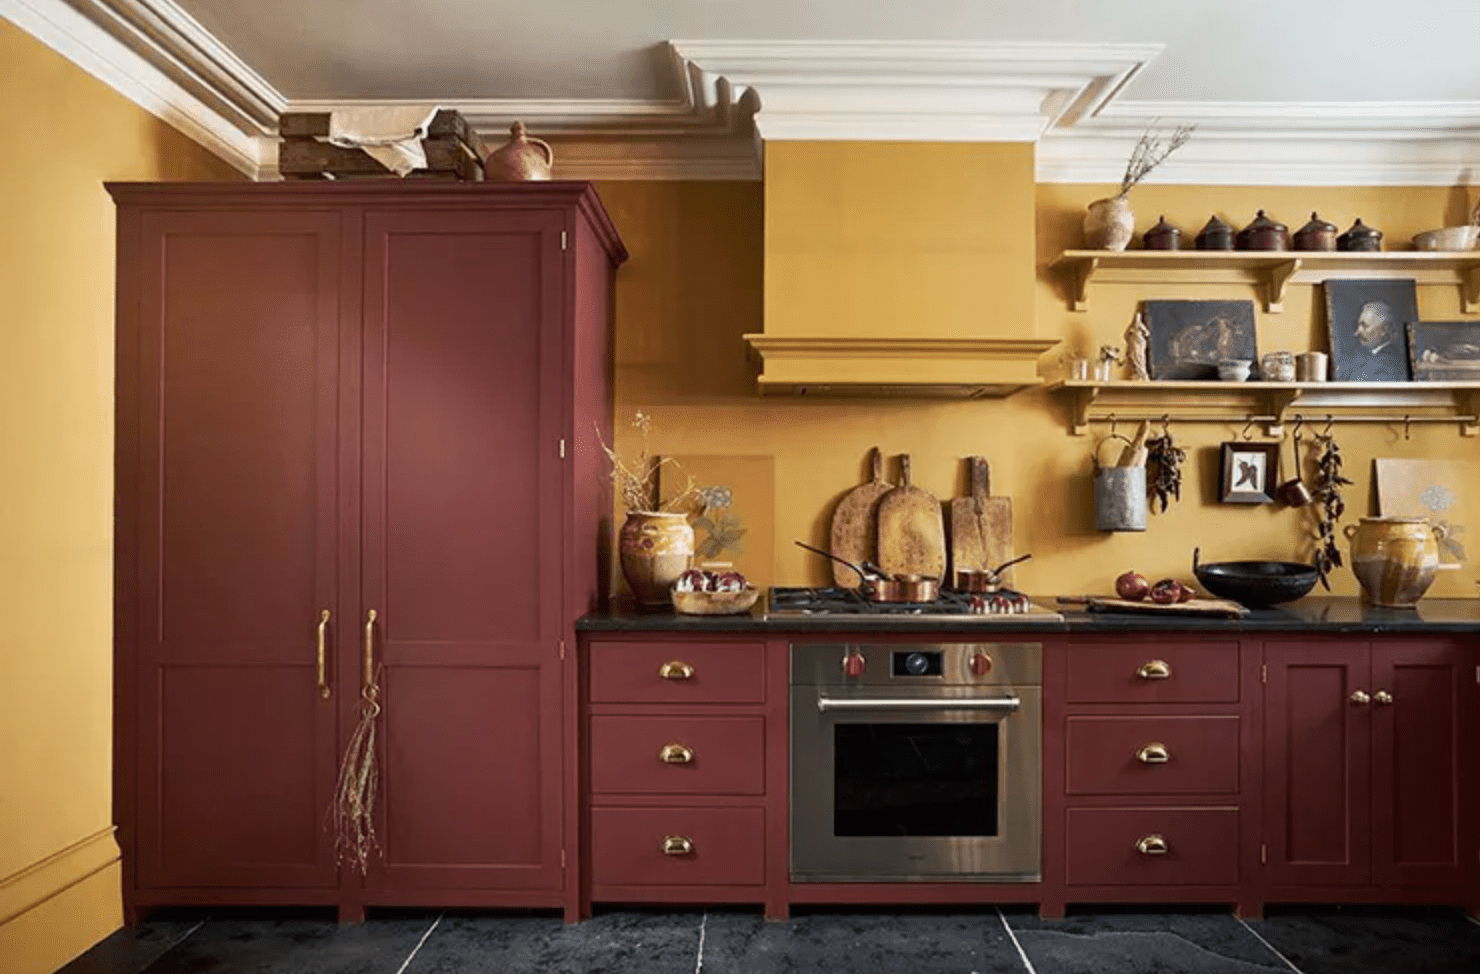 Mustard and burgundy kitchen